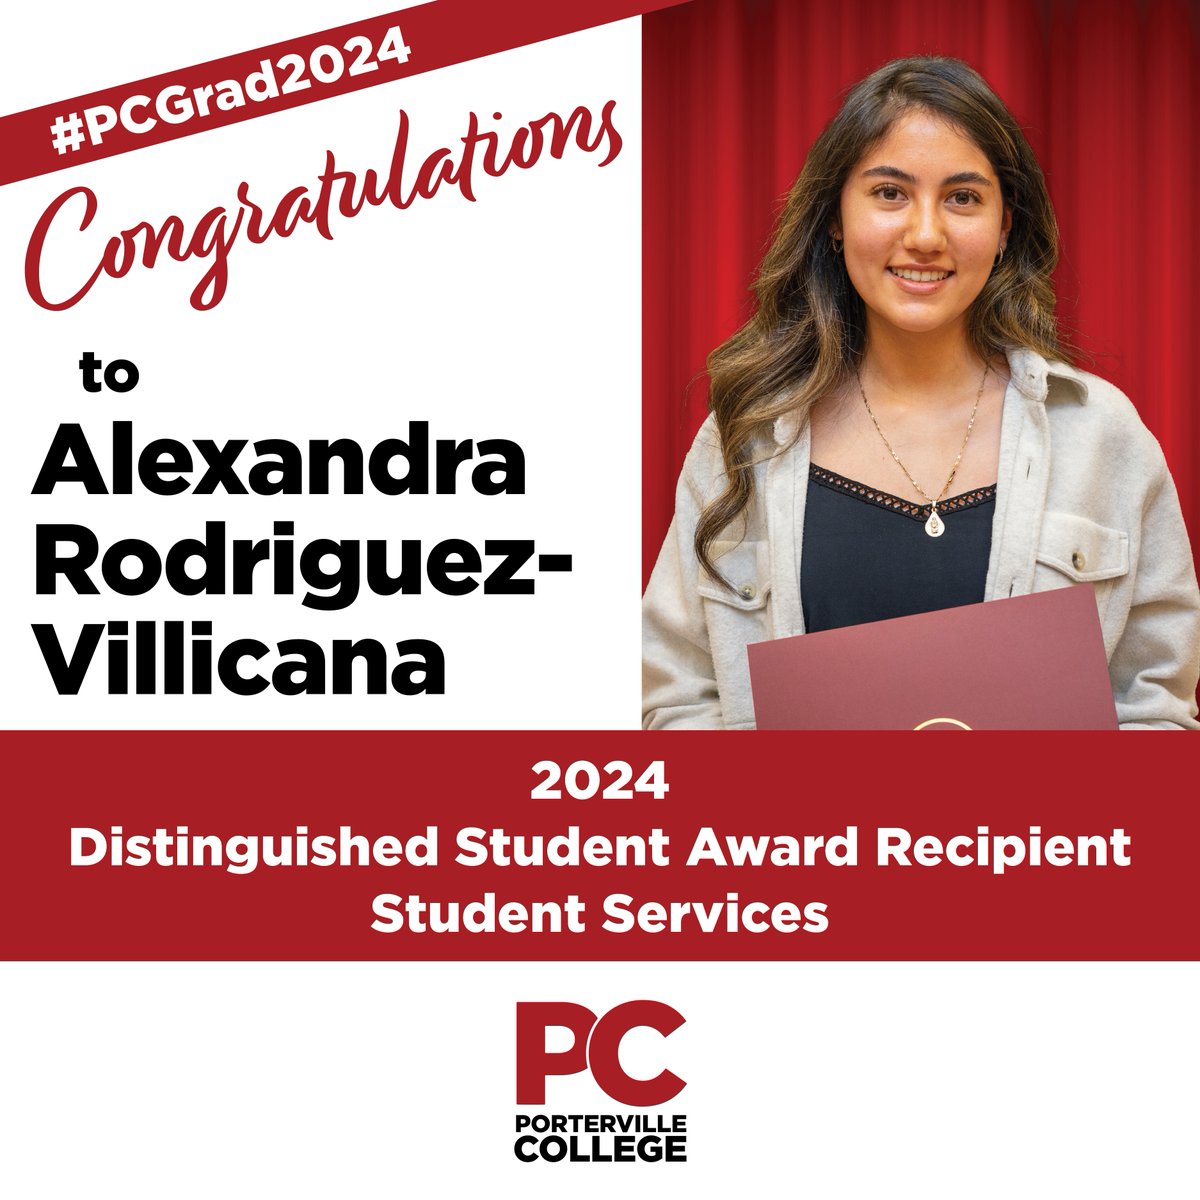 Congratulations to Alexandra Rodriguez-Villicana -- 2024 Distinguished Student Award Recipient in Student Services! #PCGrad2024 #PCStudentSuccess